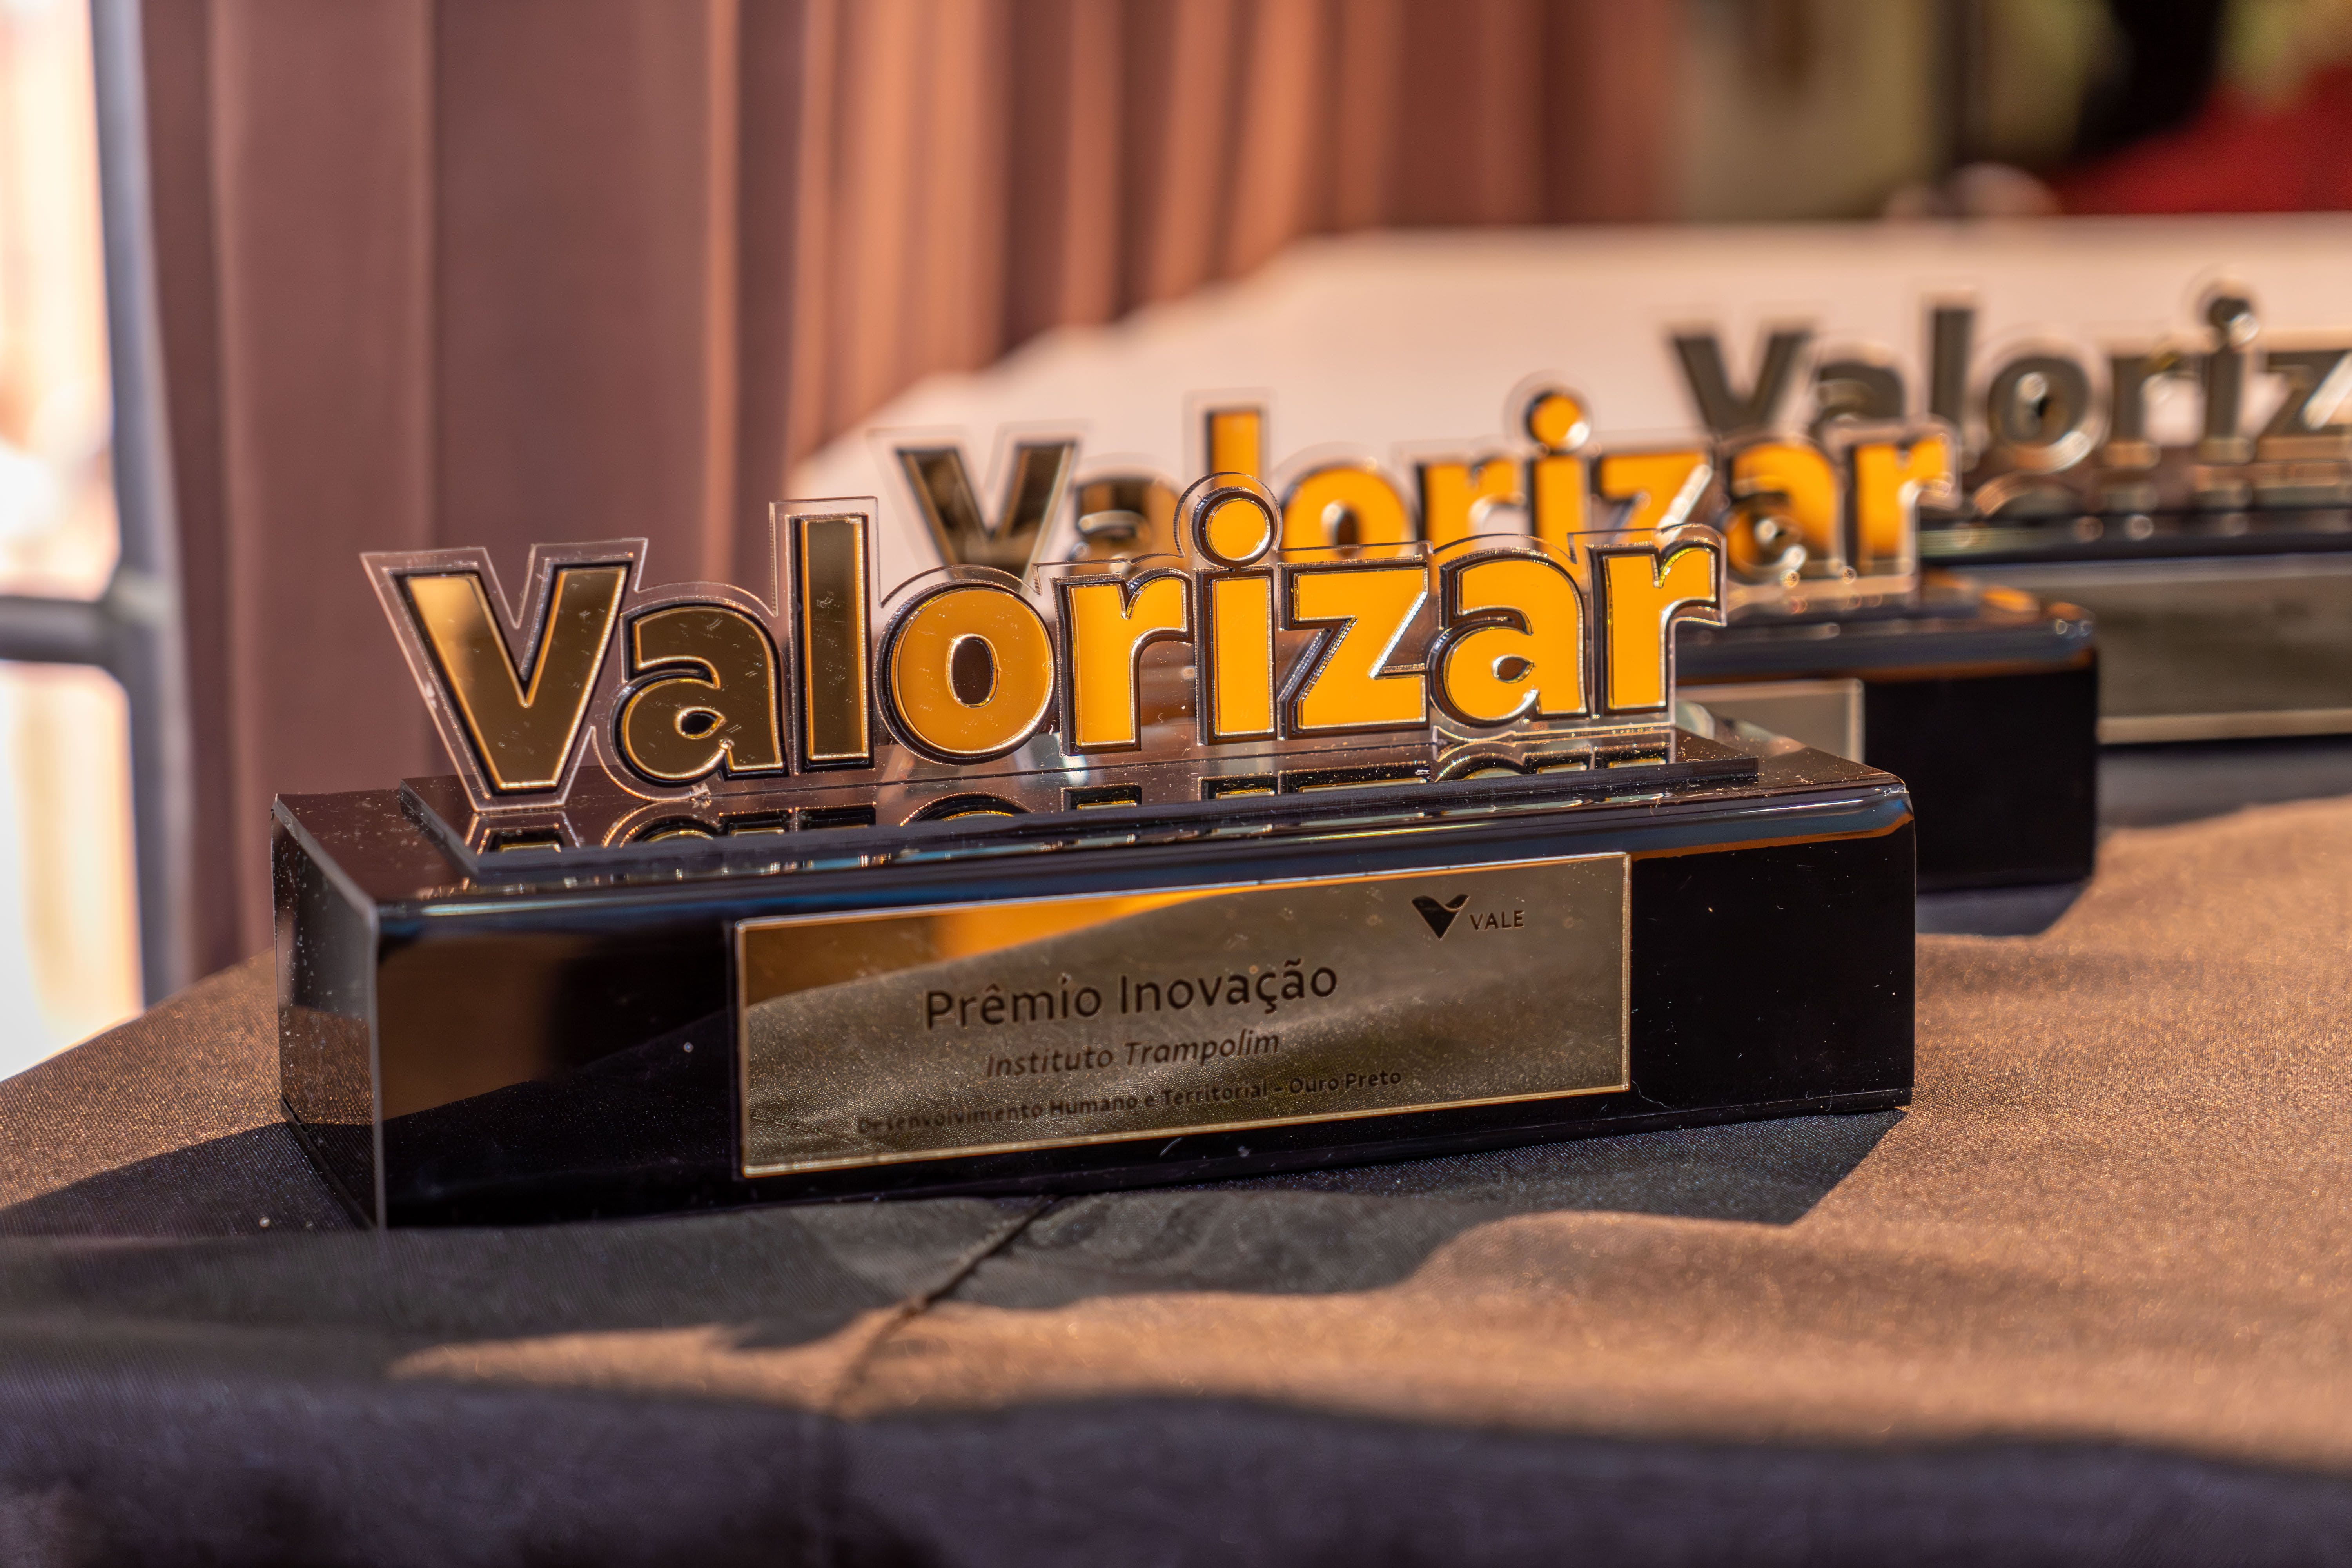 Imagem do prêmio. Em uma estrutura preta há uma placa escrito “Prêmio Inovação” e em cima a palavra Valorizar, em relevo.